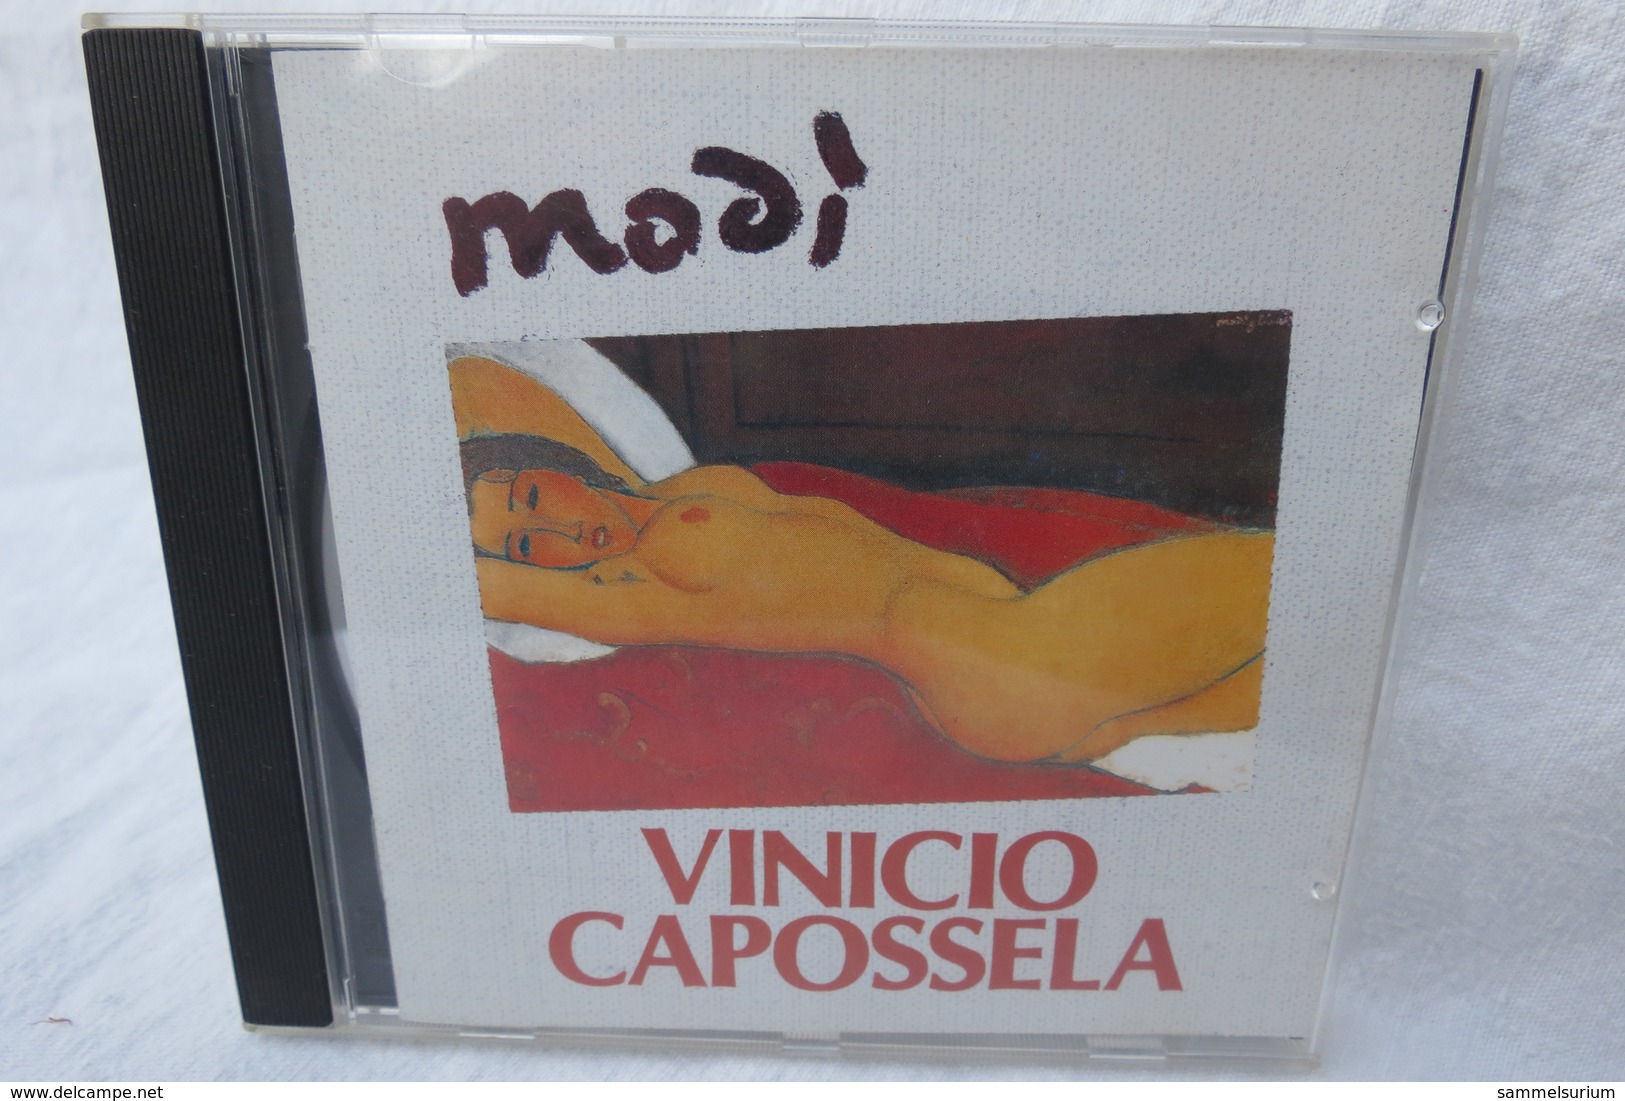 CD "Modi" Vinicio Capossela - World Music